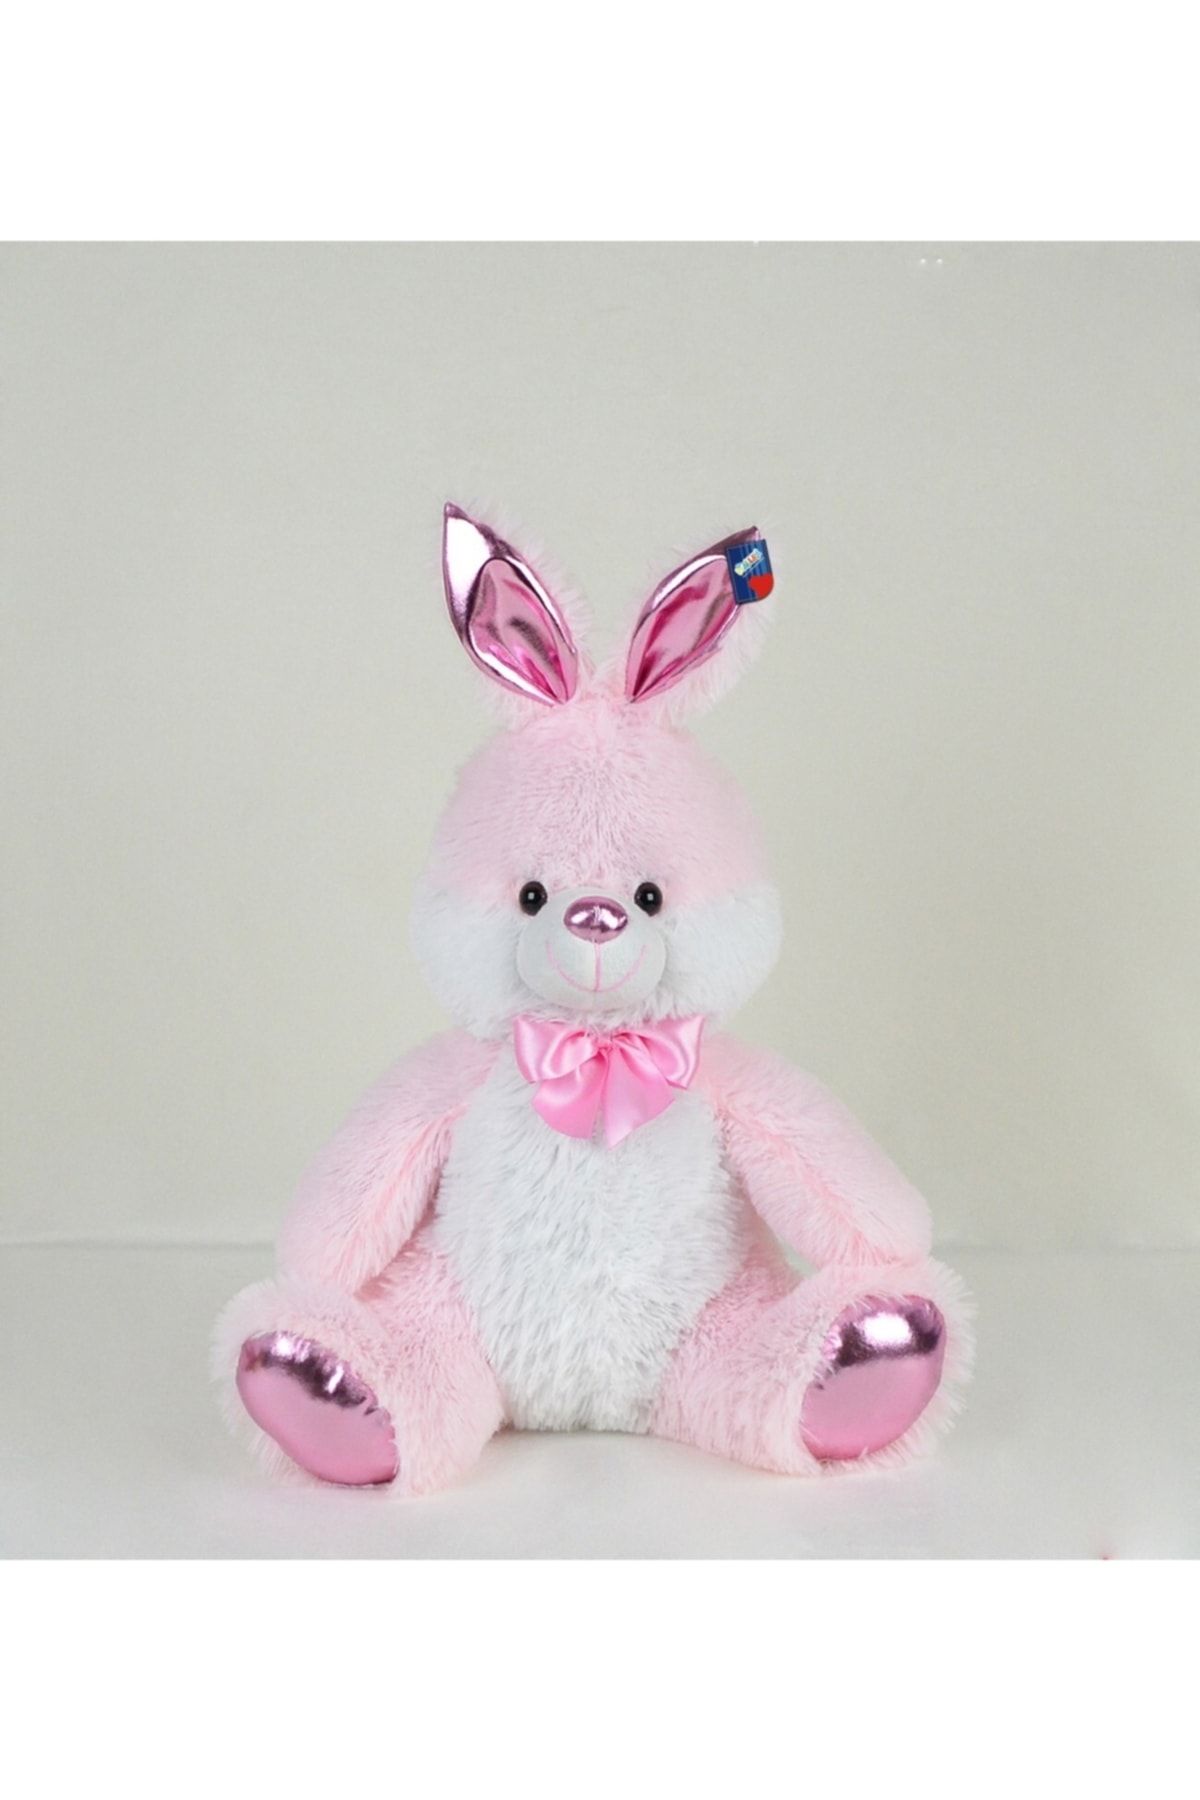 Halley Oyuncak 55 cm Parlak Kumaş Sevimli Pembe Tavşan